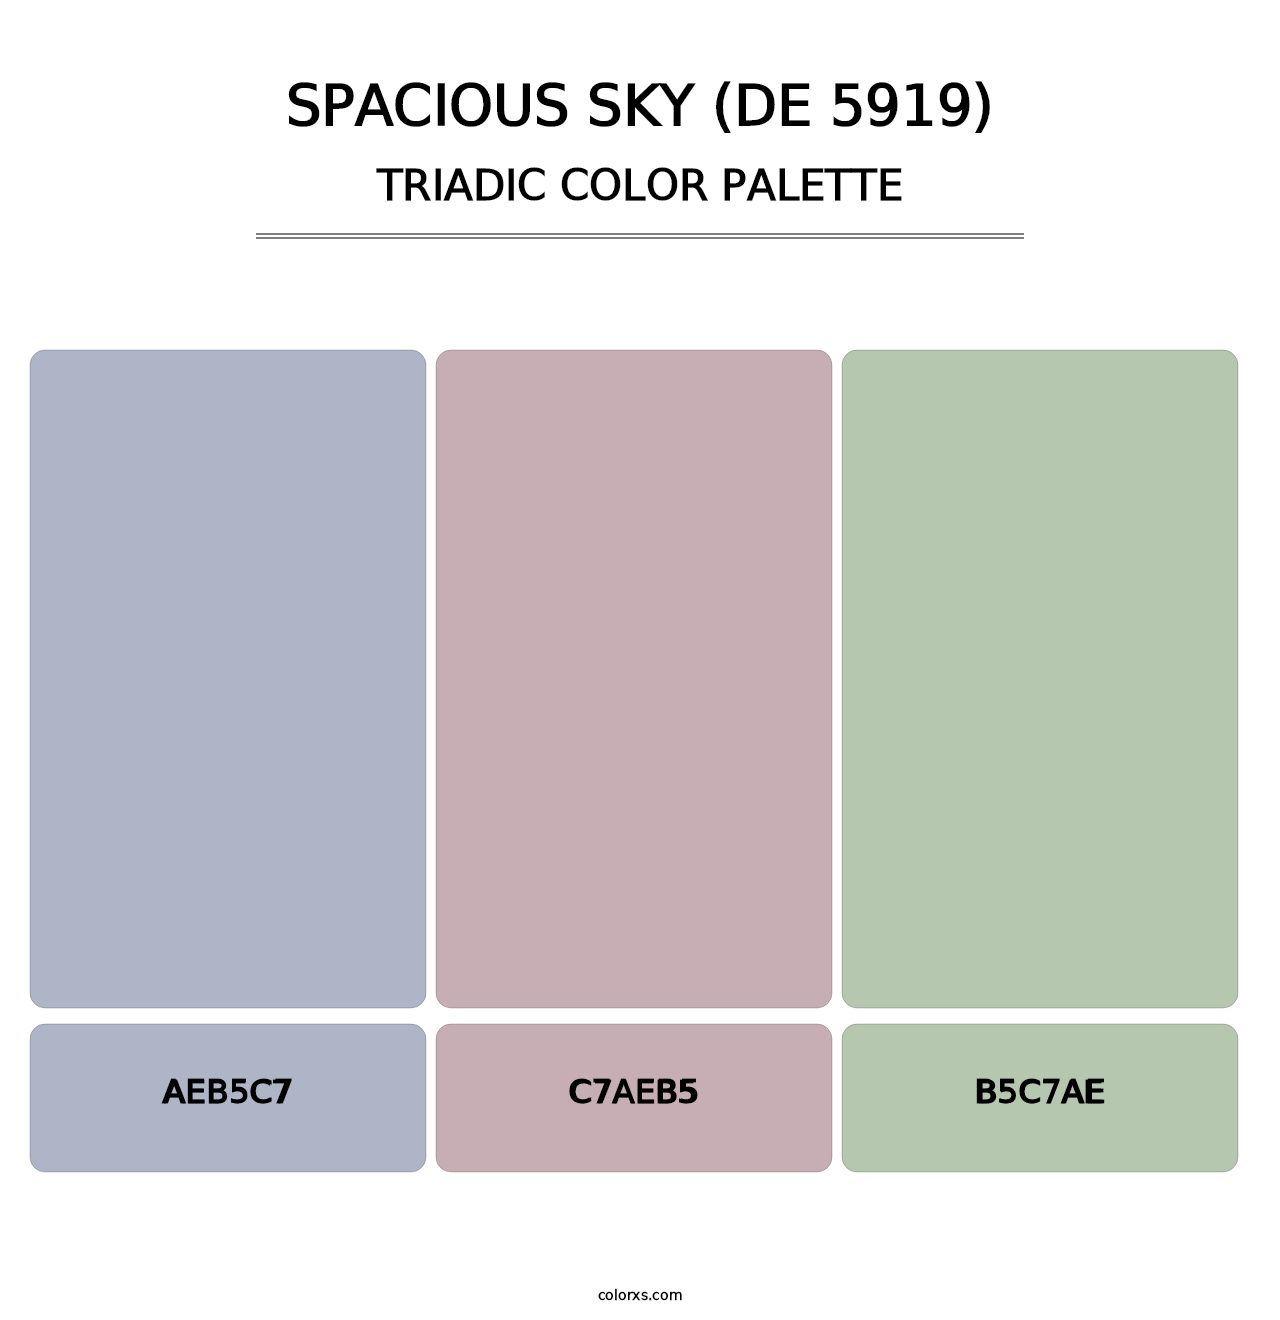 Spacious Sky (DE 5919) - Triadic Color Palette